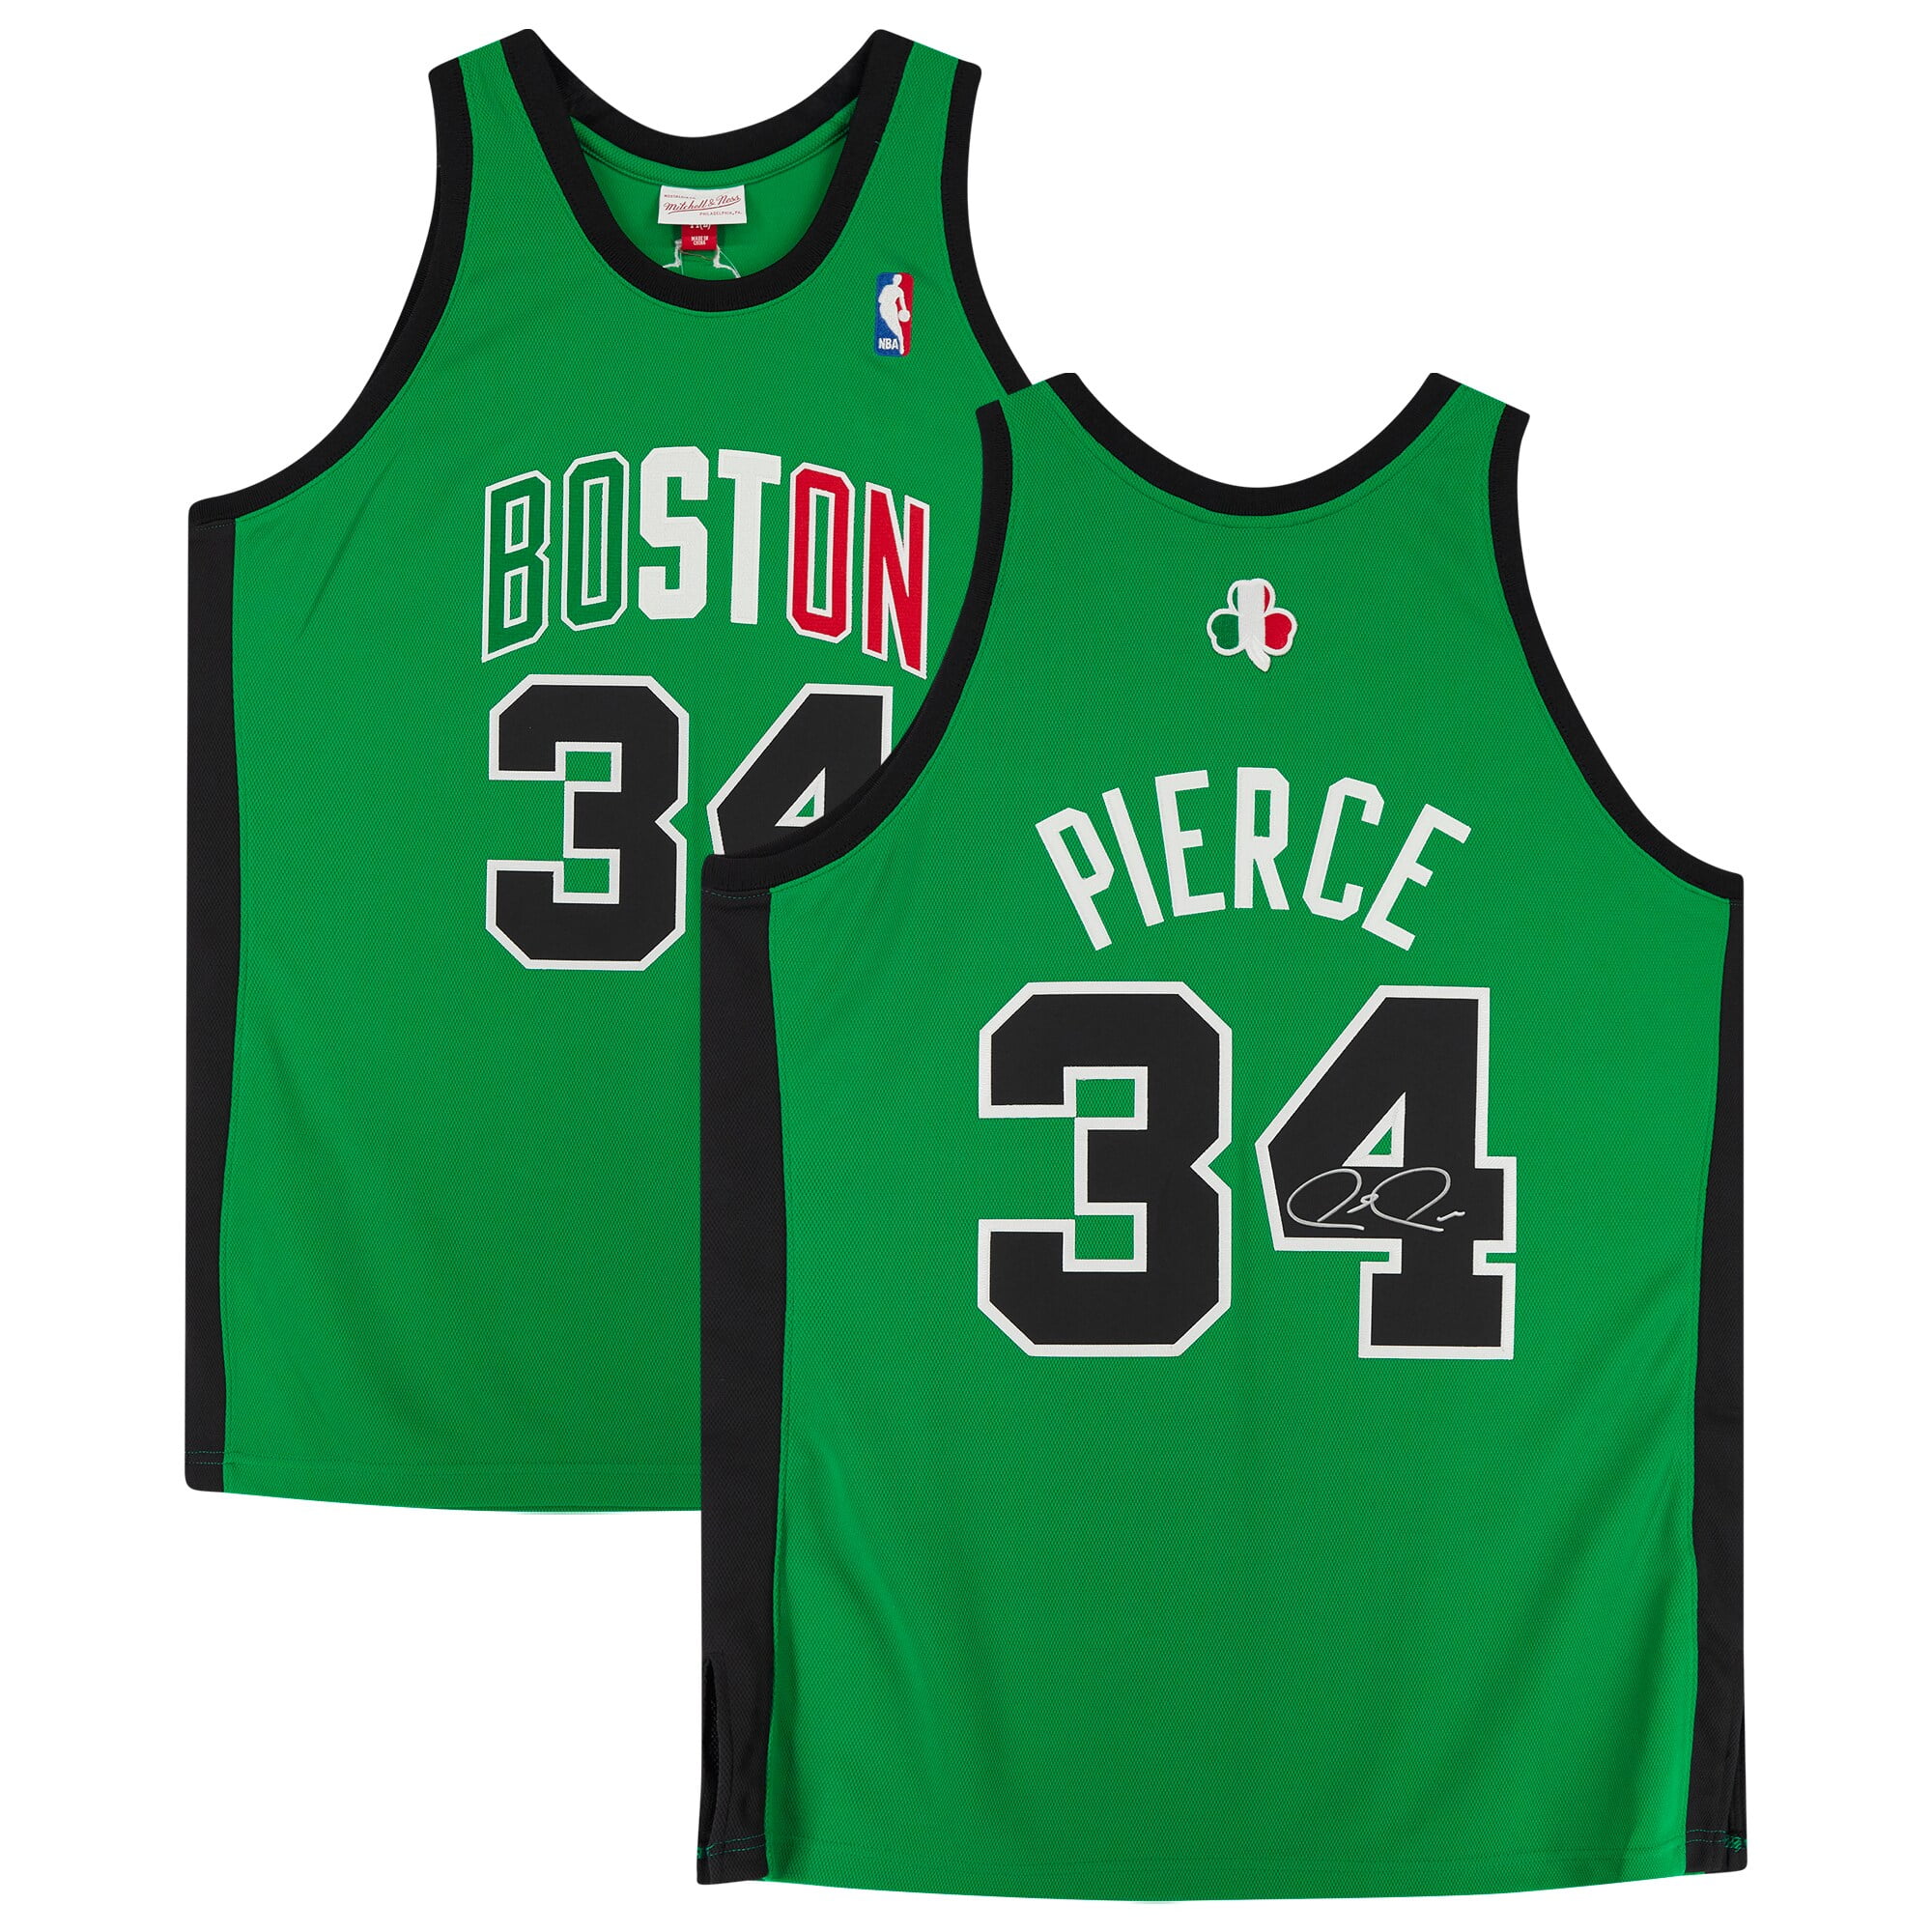 Larry Bird (Celtics Green Away Jersey) Figure, NBA Figure